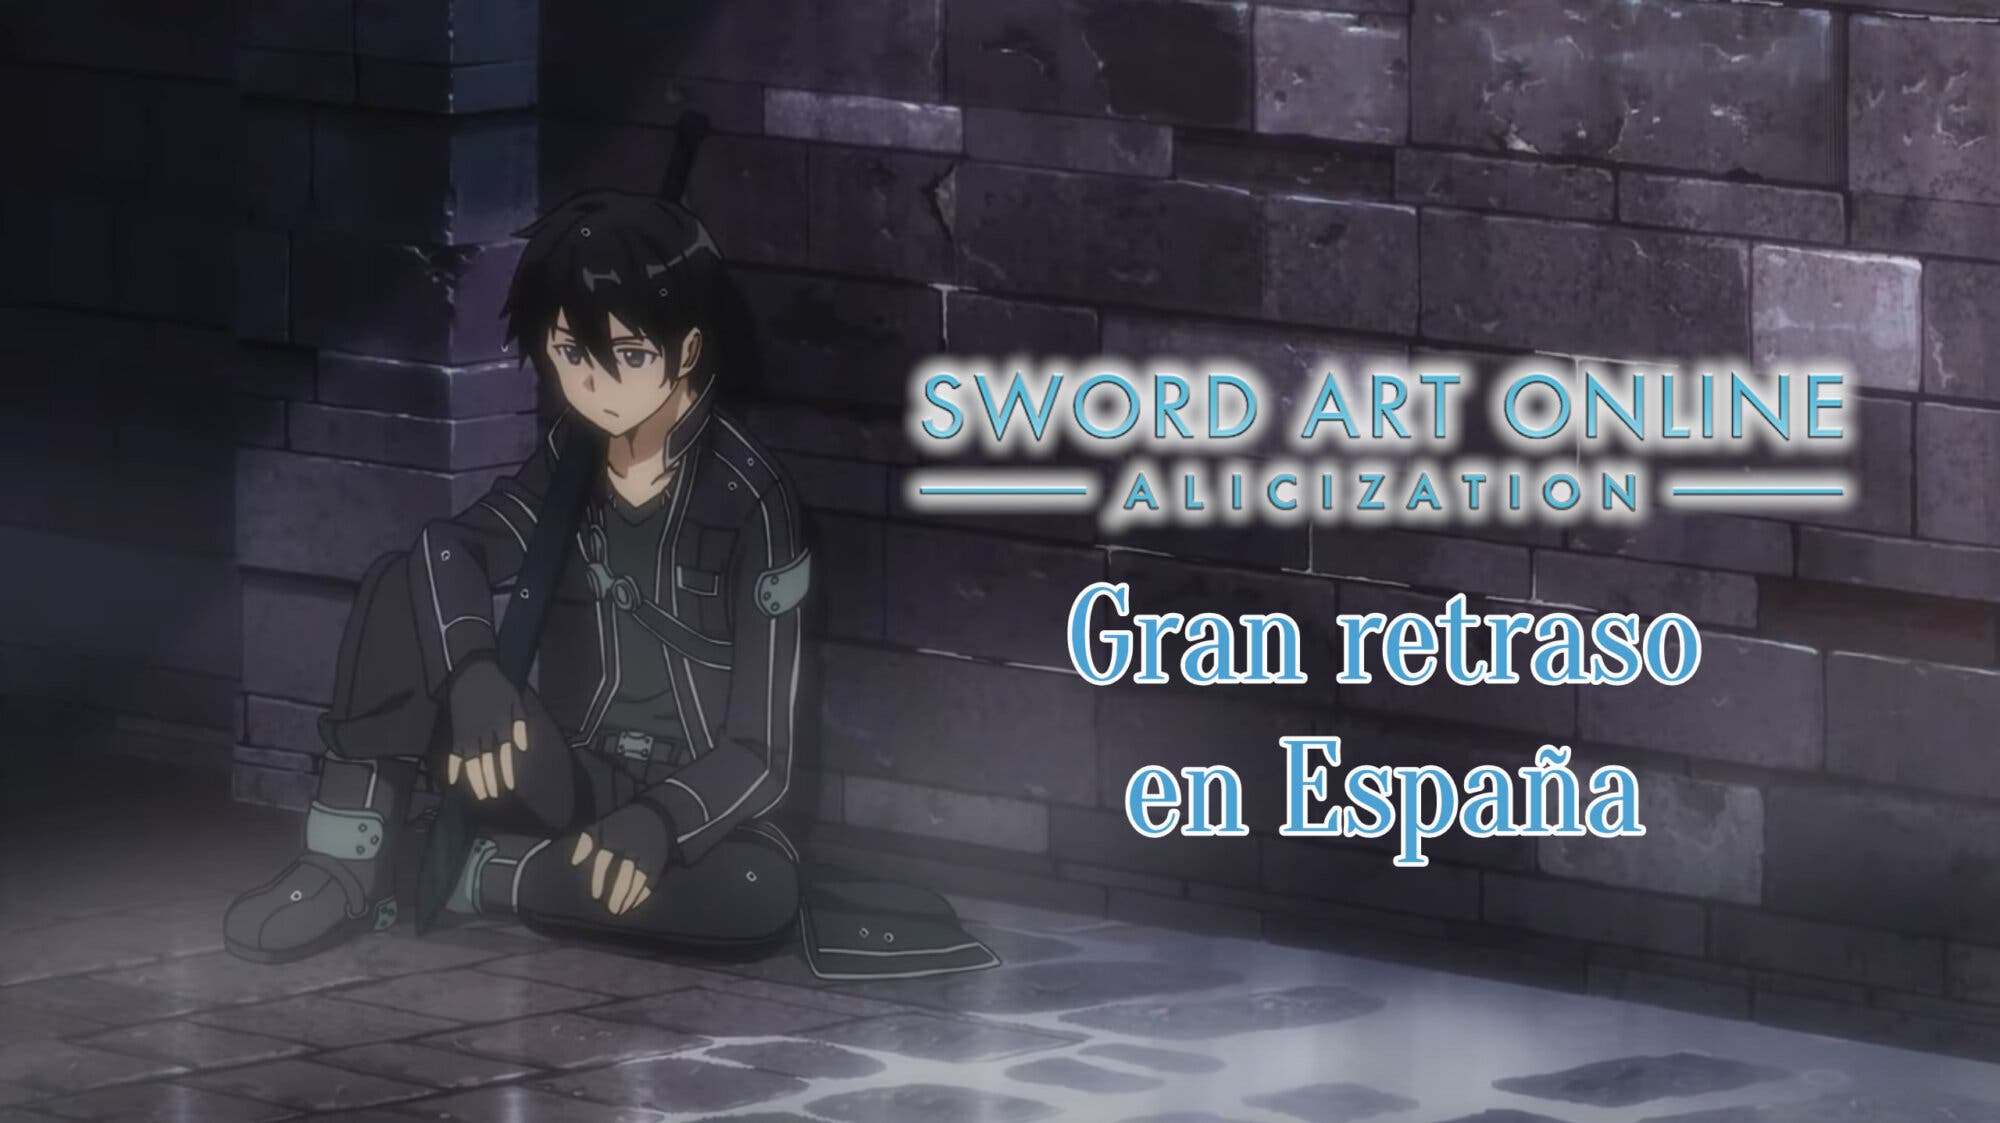 El anime Sword Art Online: Alicization – War of Underworld llegará